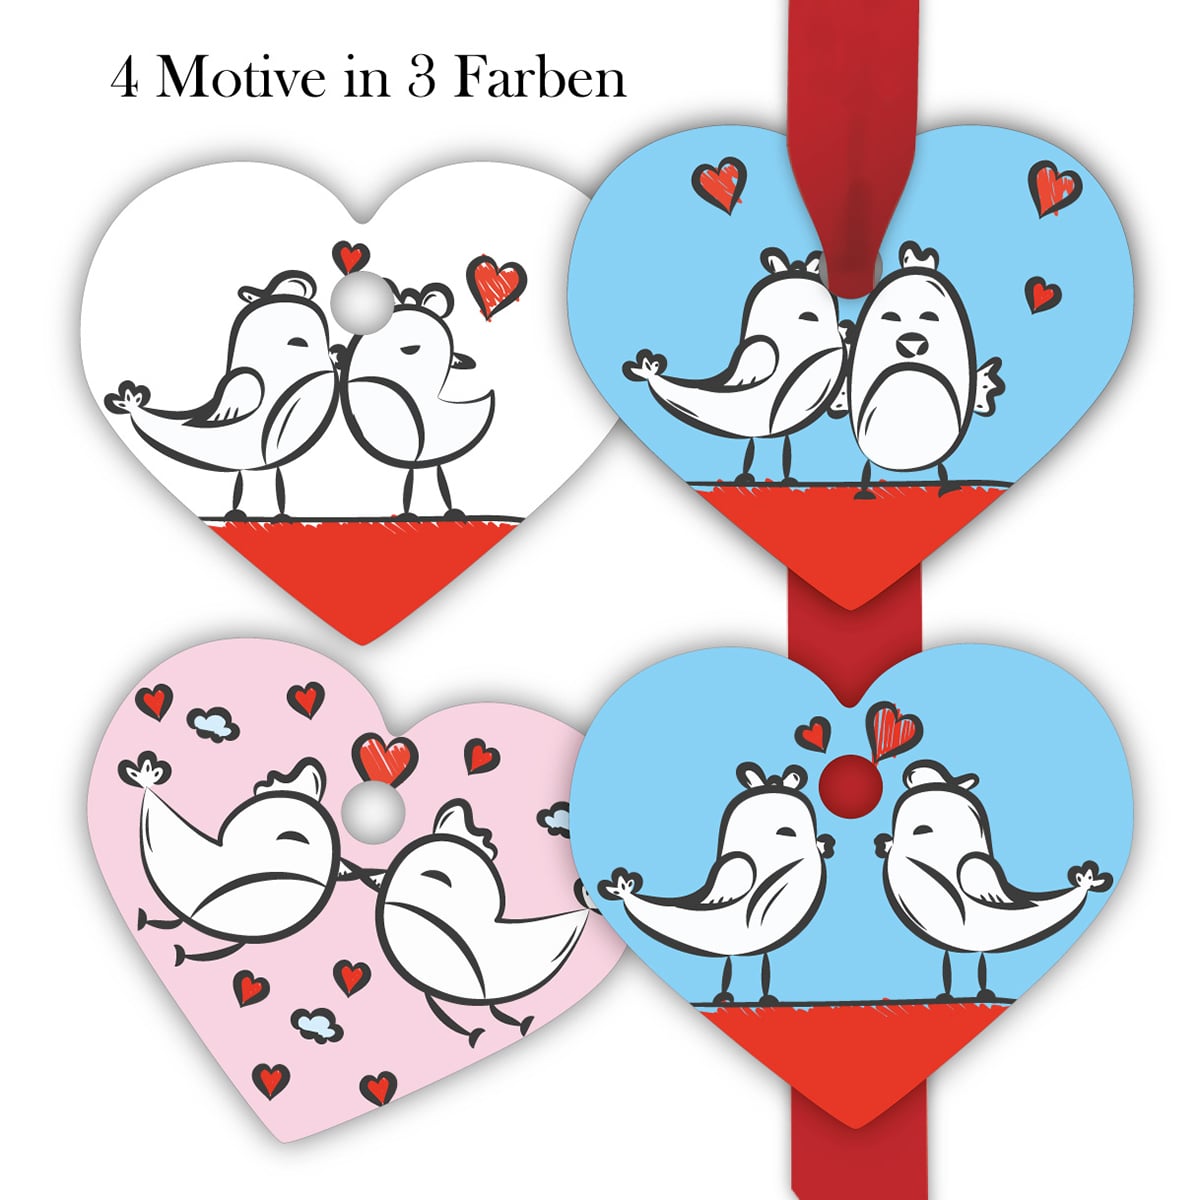 Kartenkaufrausch: Valentins Herz Geschenkanhänger aus unserer Liebes Papeterie in multicolor